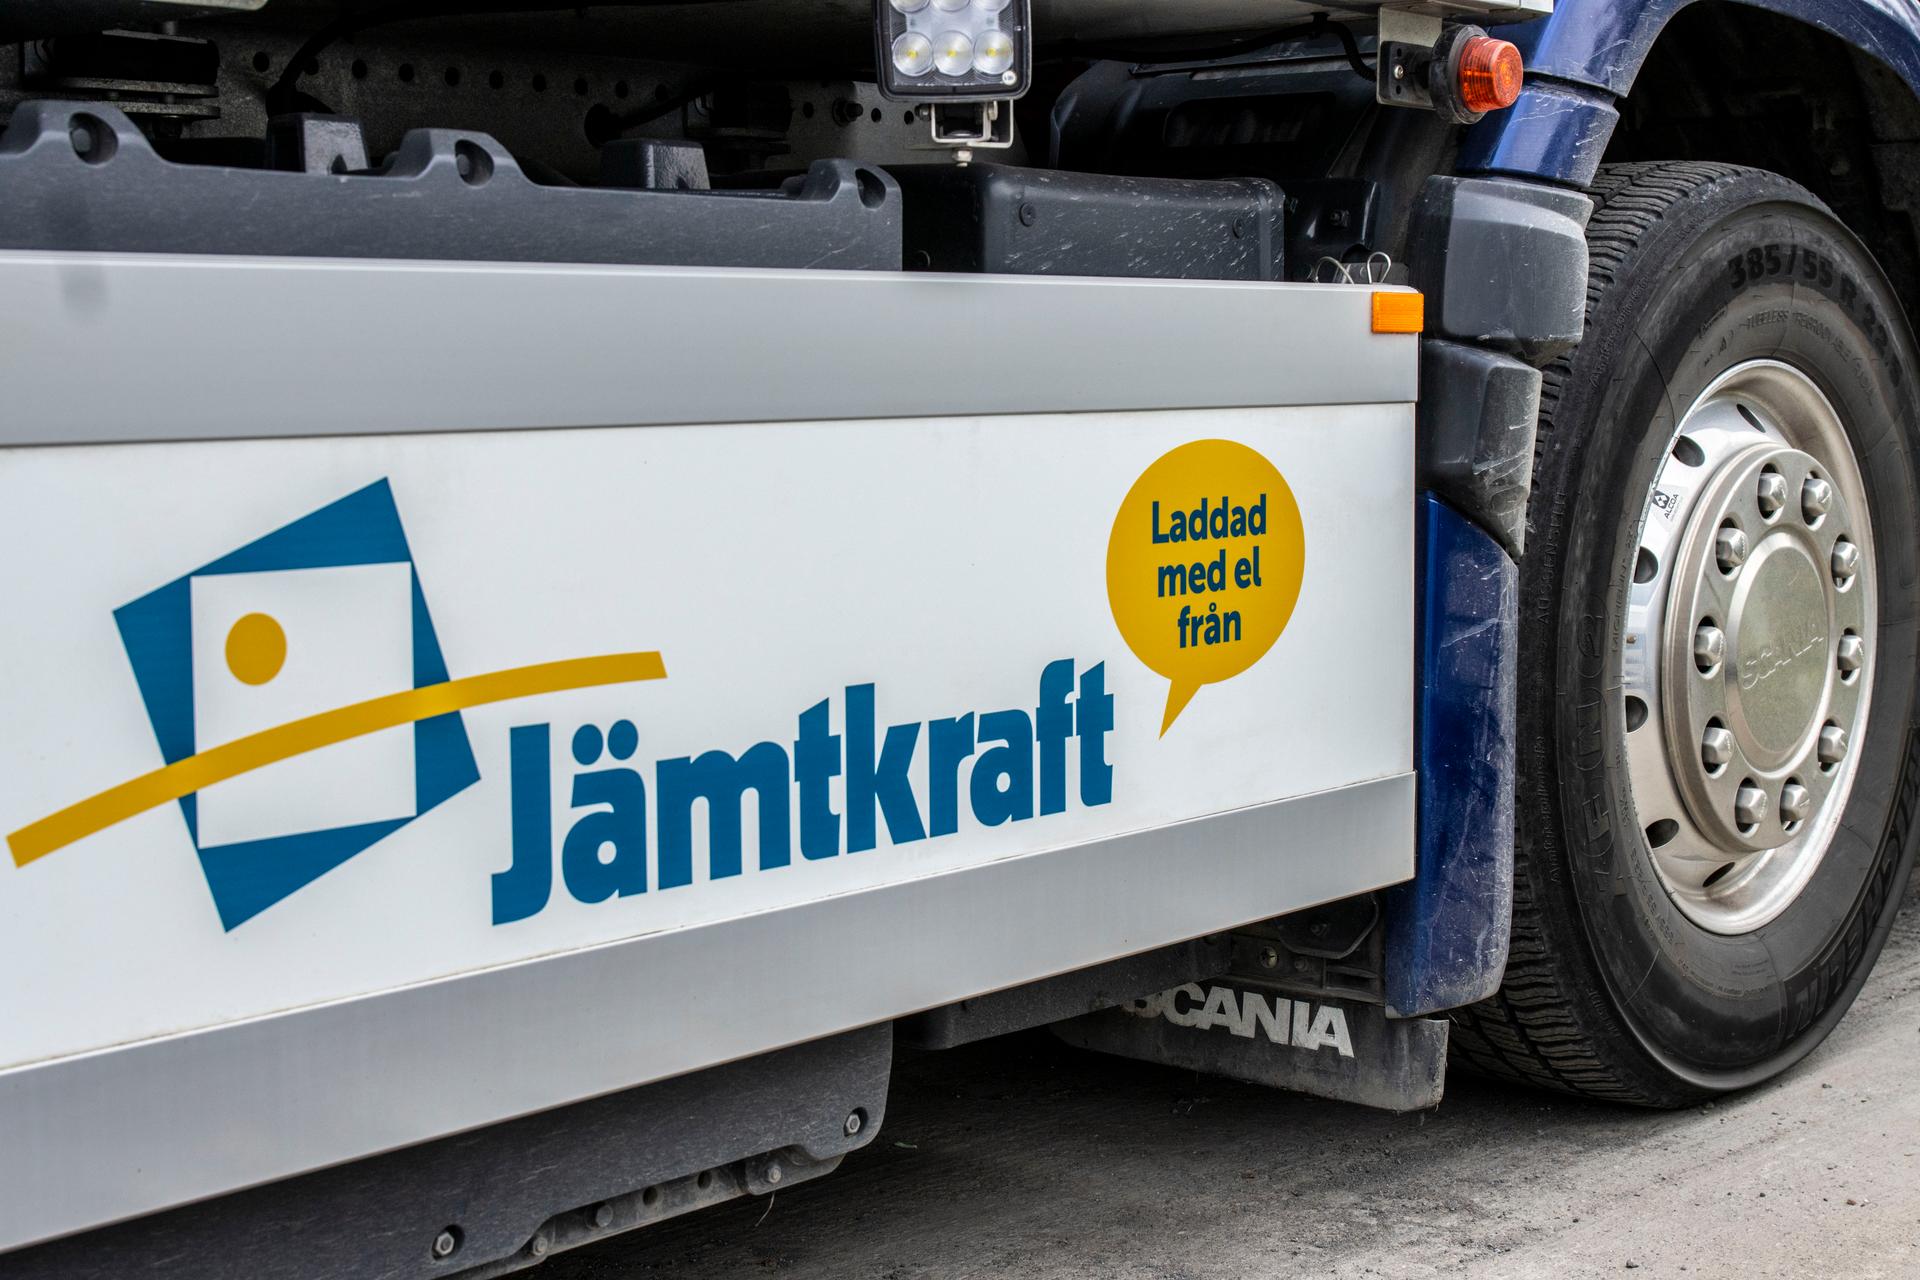 Varje ellastbil har två annonsytor för Jämtkrafts kampanj.